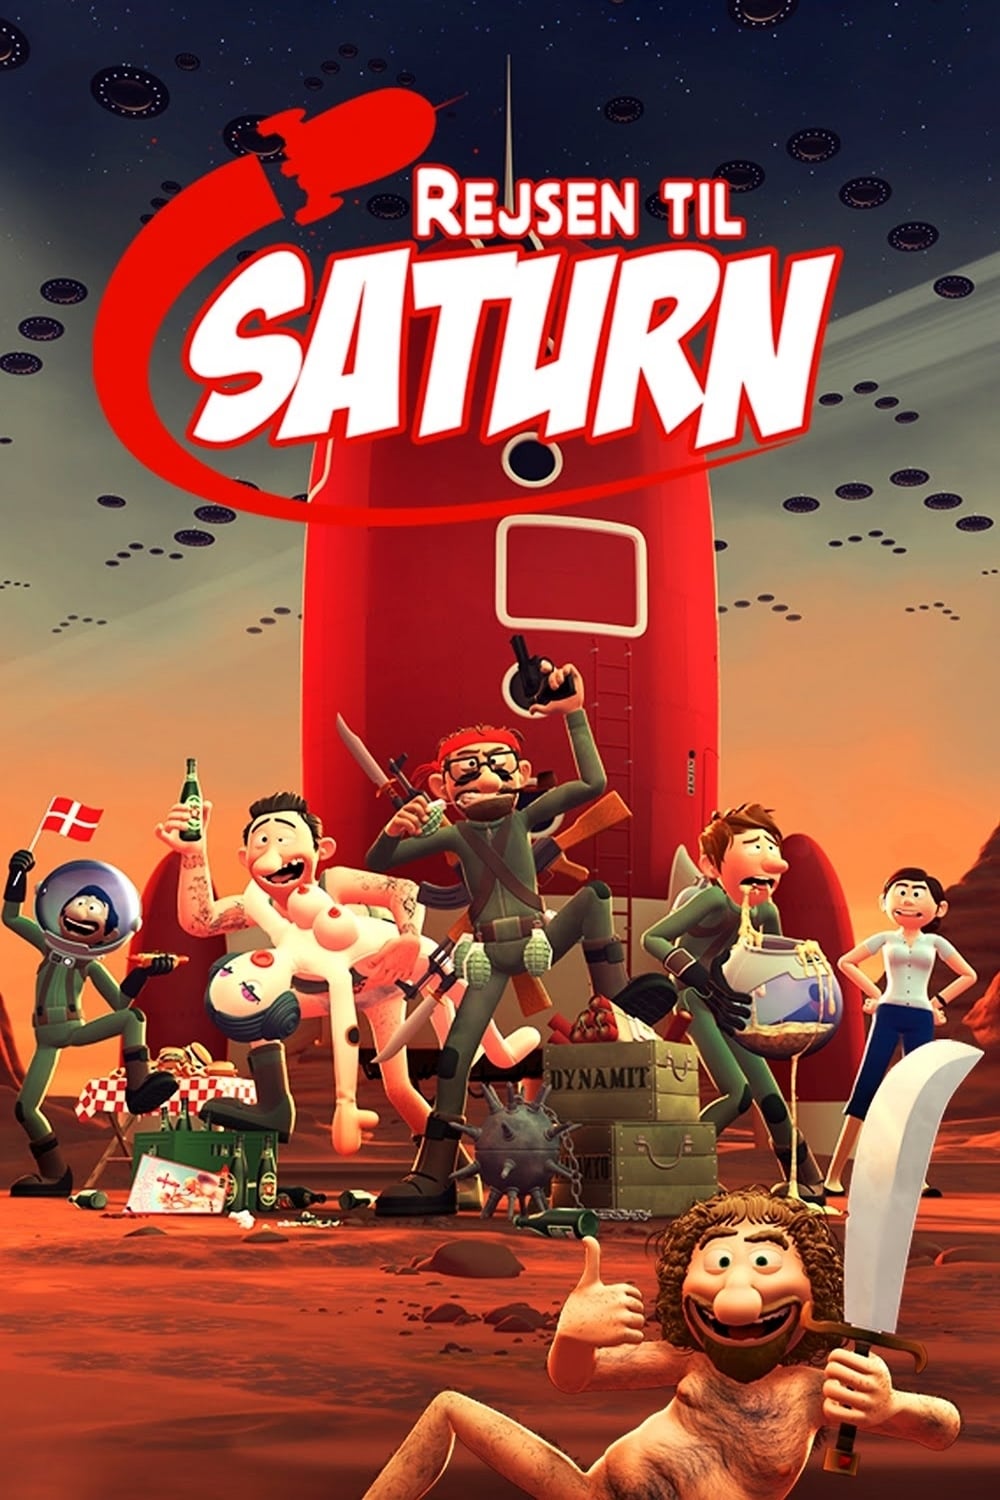 Rejsen til Saturn est-il disponible sur Netflix ou autre ?